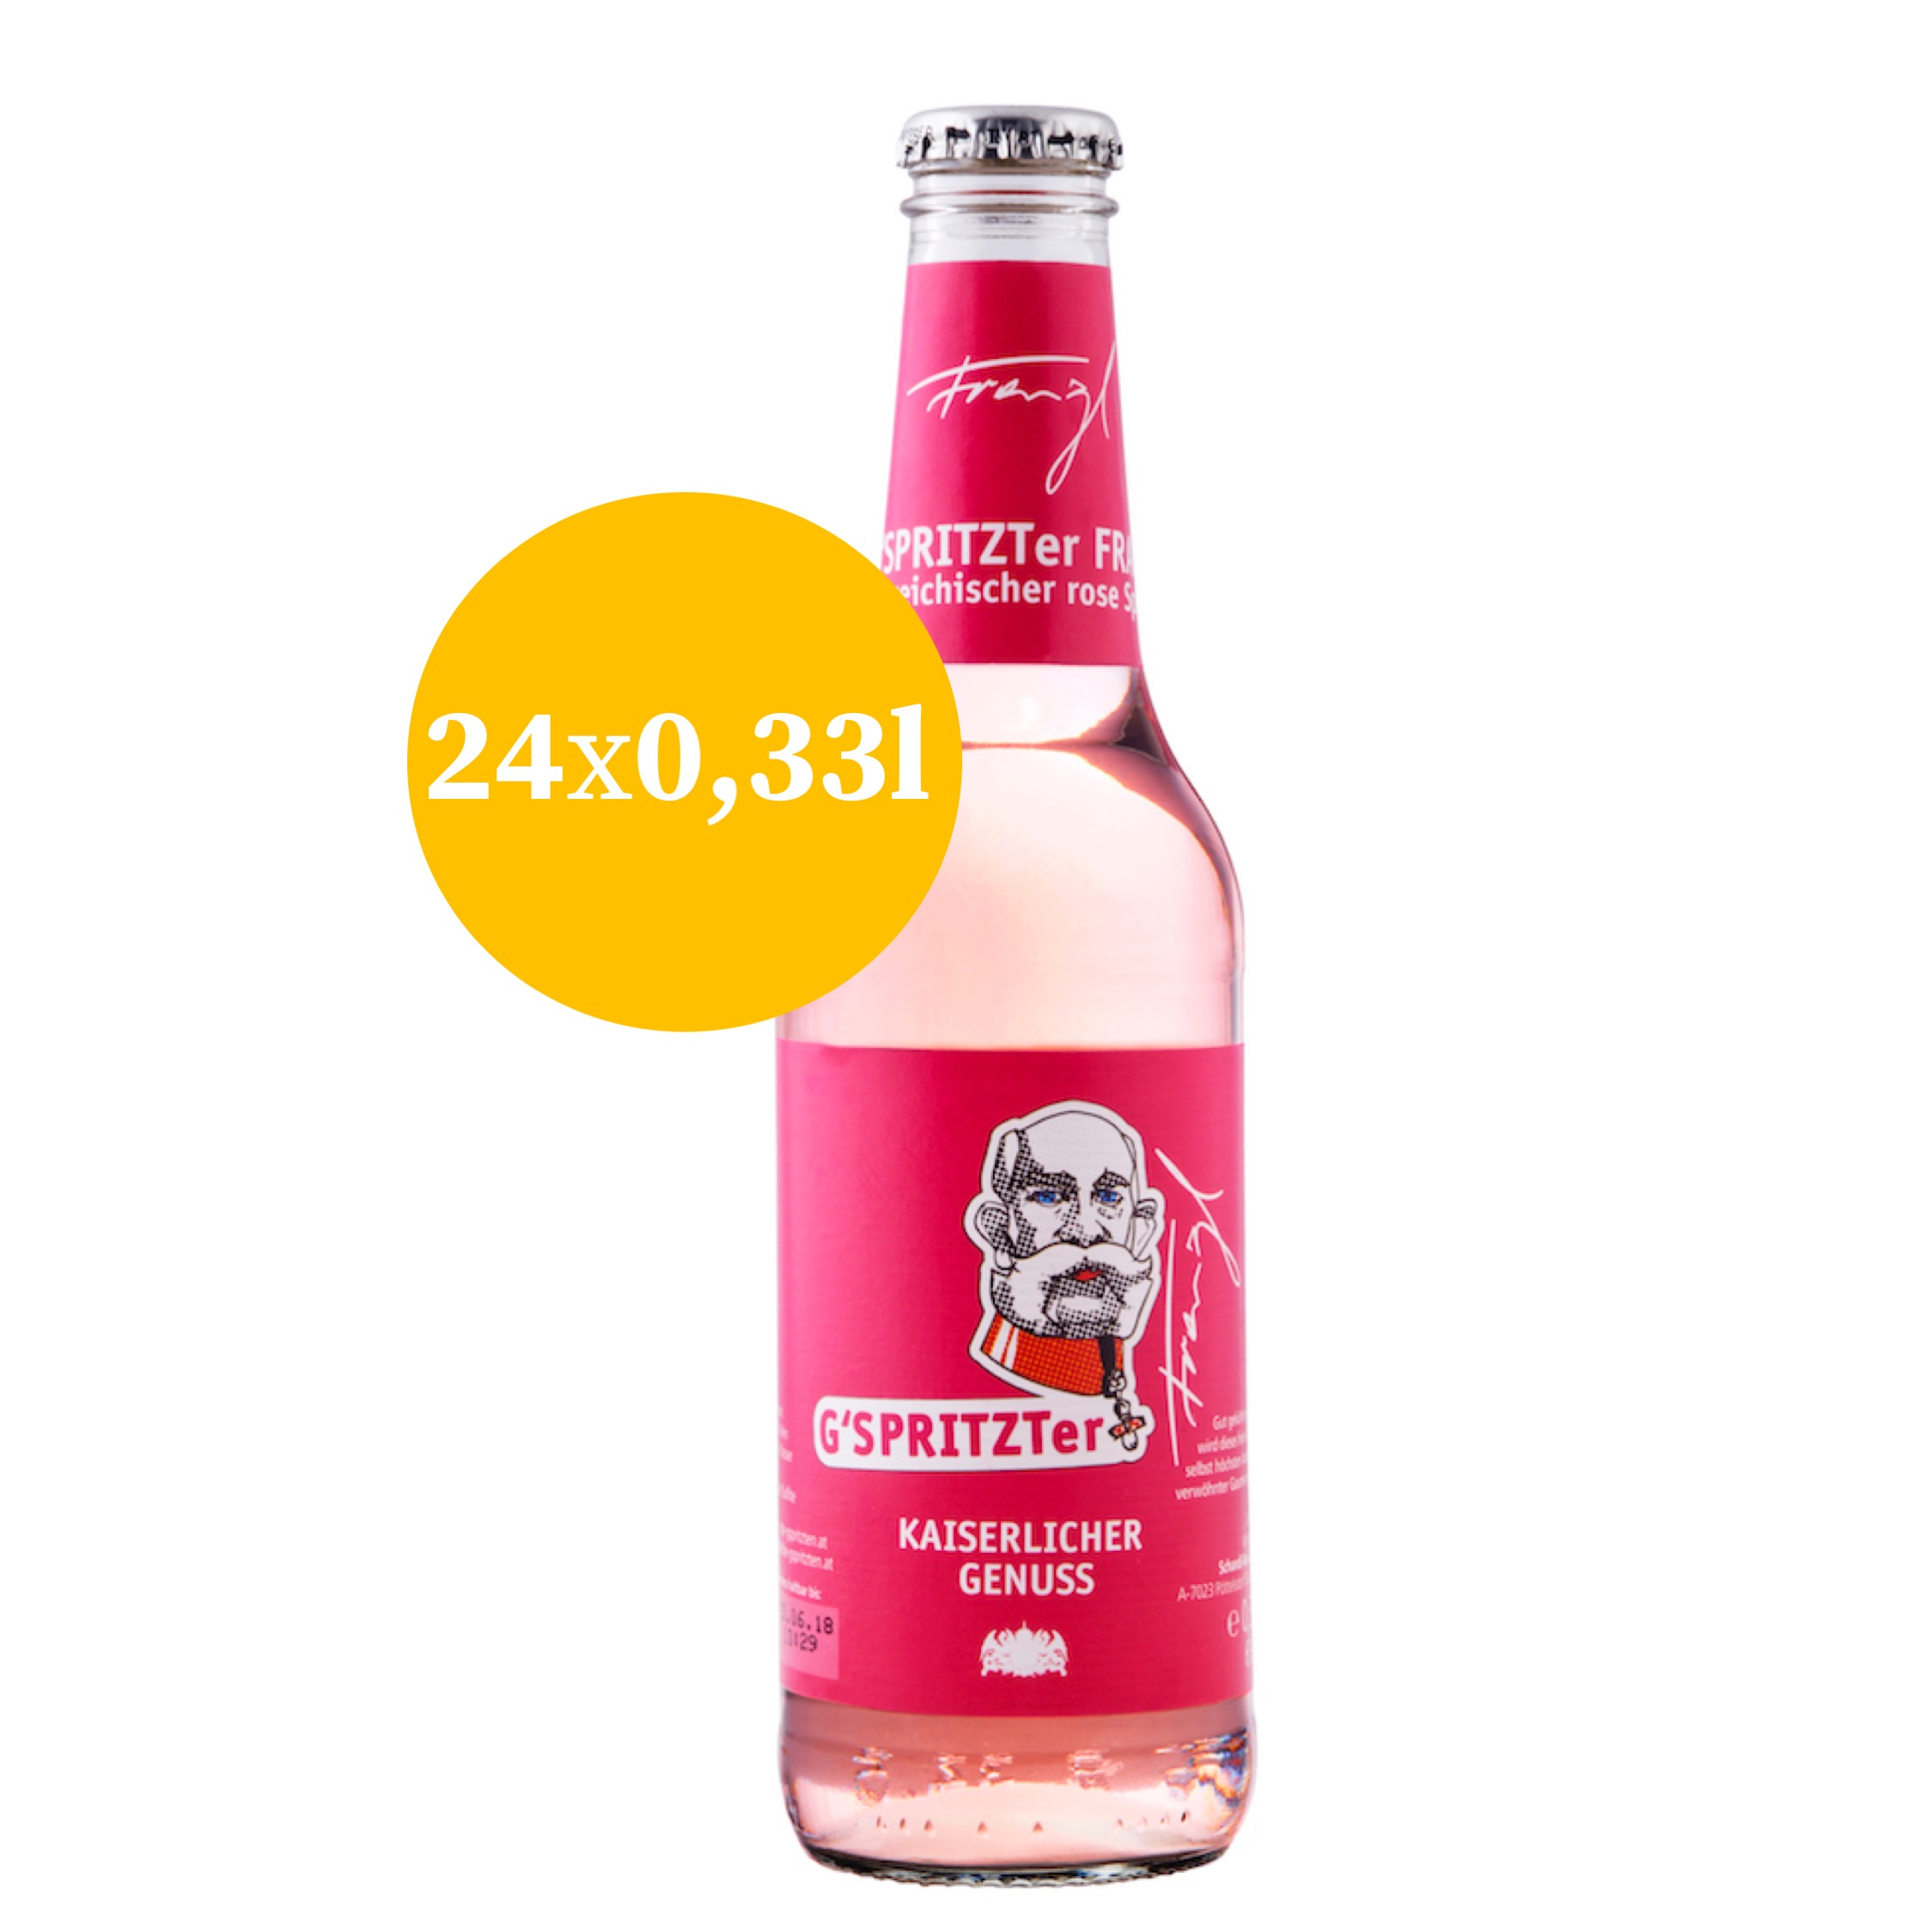 Rosé Spritzer, Gspritzter Franzl, 0,33l